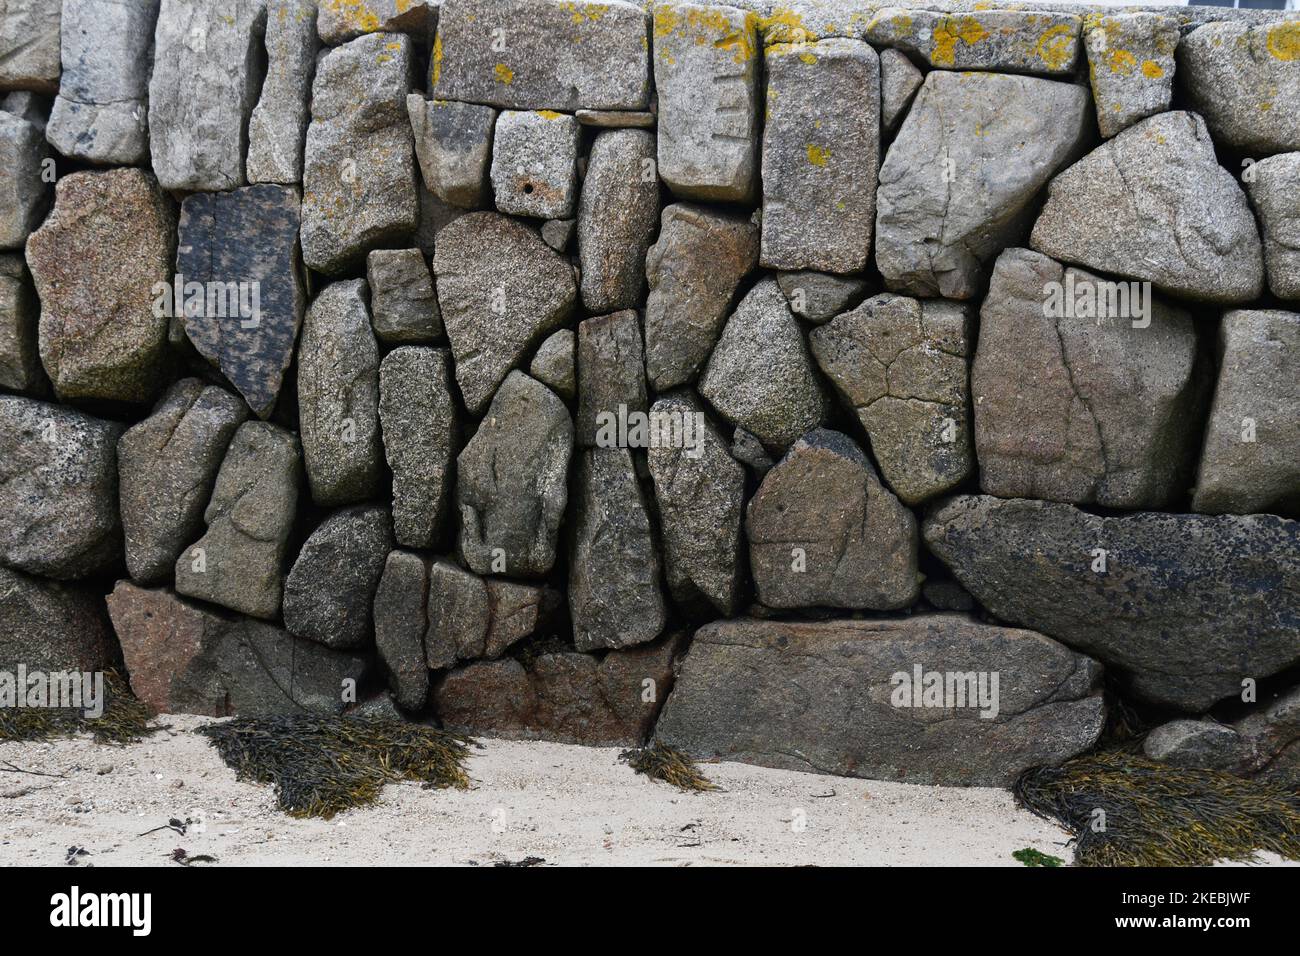 Blocchi di granito formano la banchina del Porto a New Grimsby sull'isola di Tresco nelle isole di Scilly archepelago al largo della costa della Cornovaglia. Foto Stock